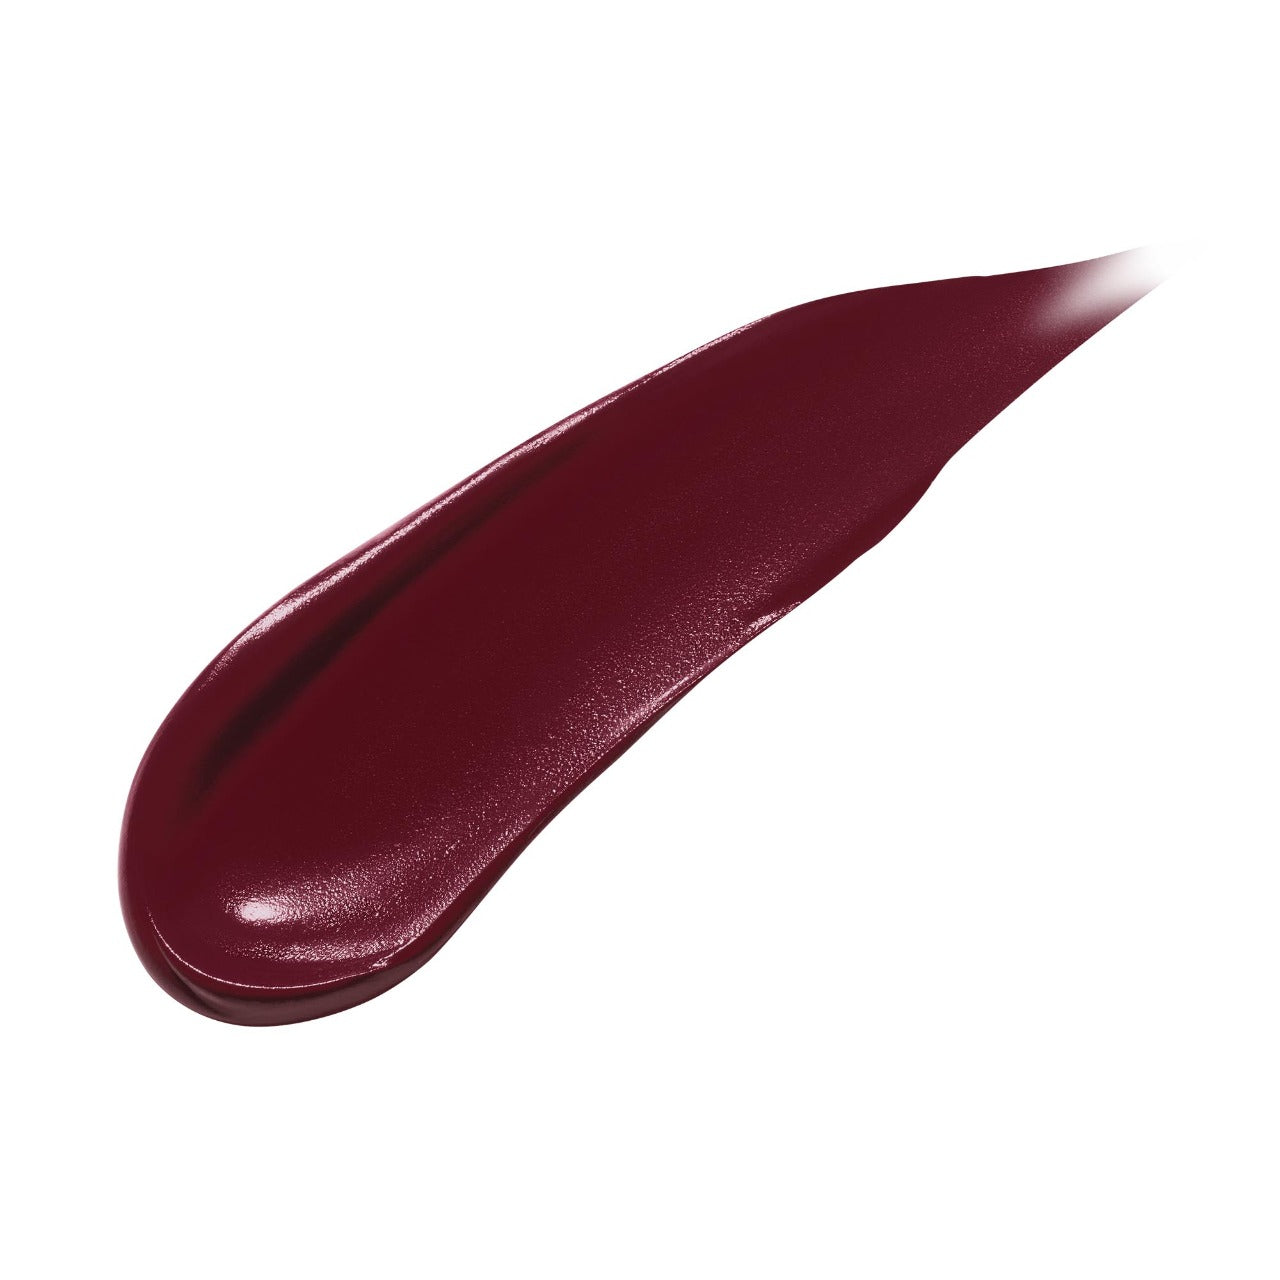 Fenty Icon The Fill Semi-Matte Refillable Lipstick